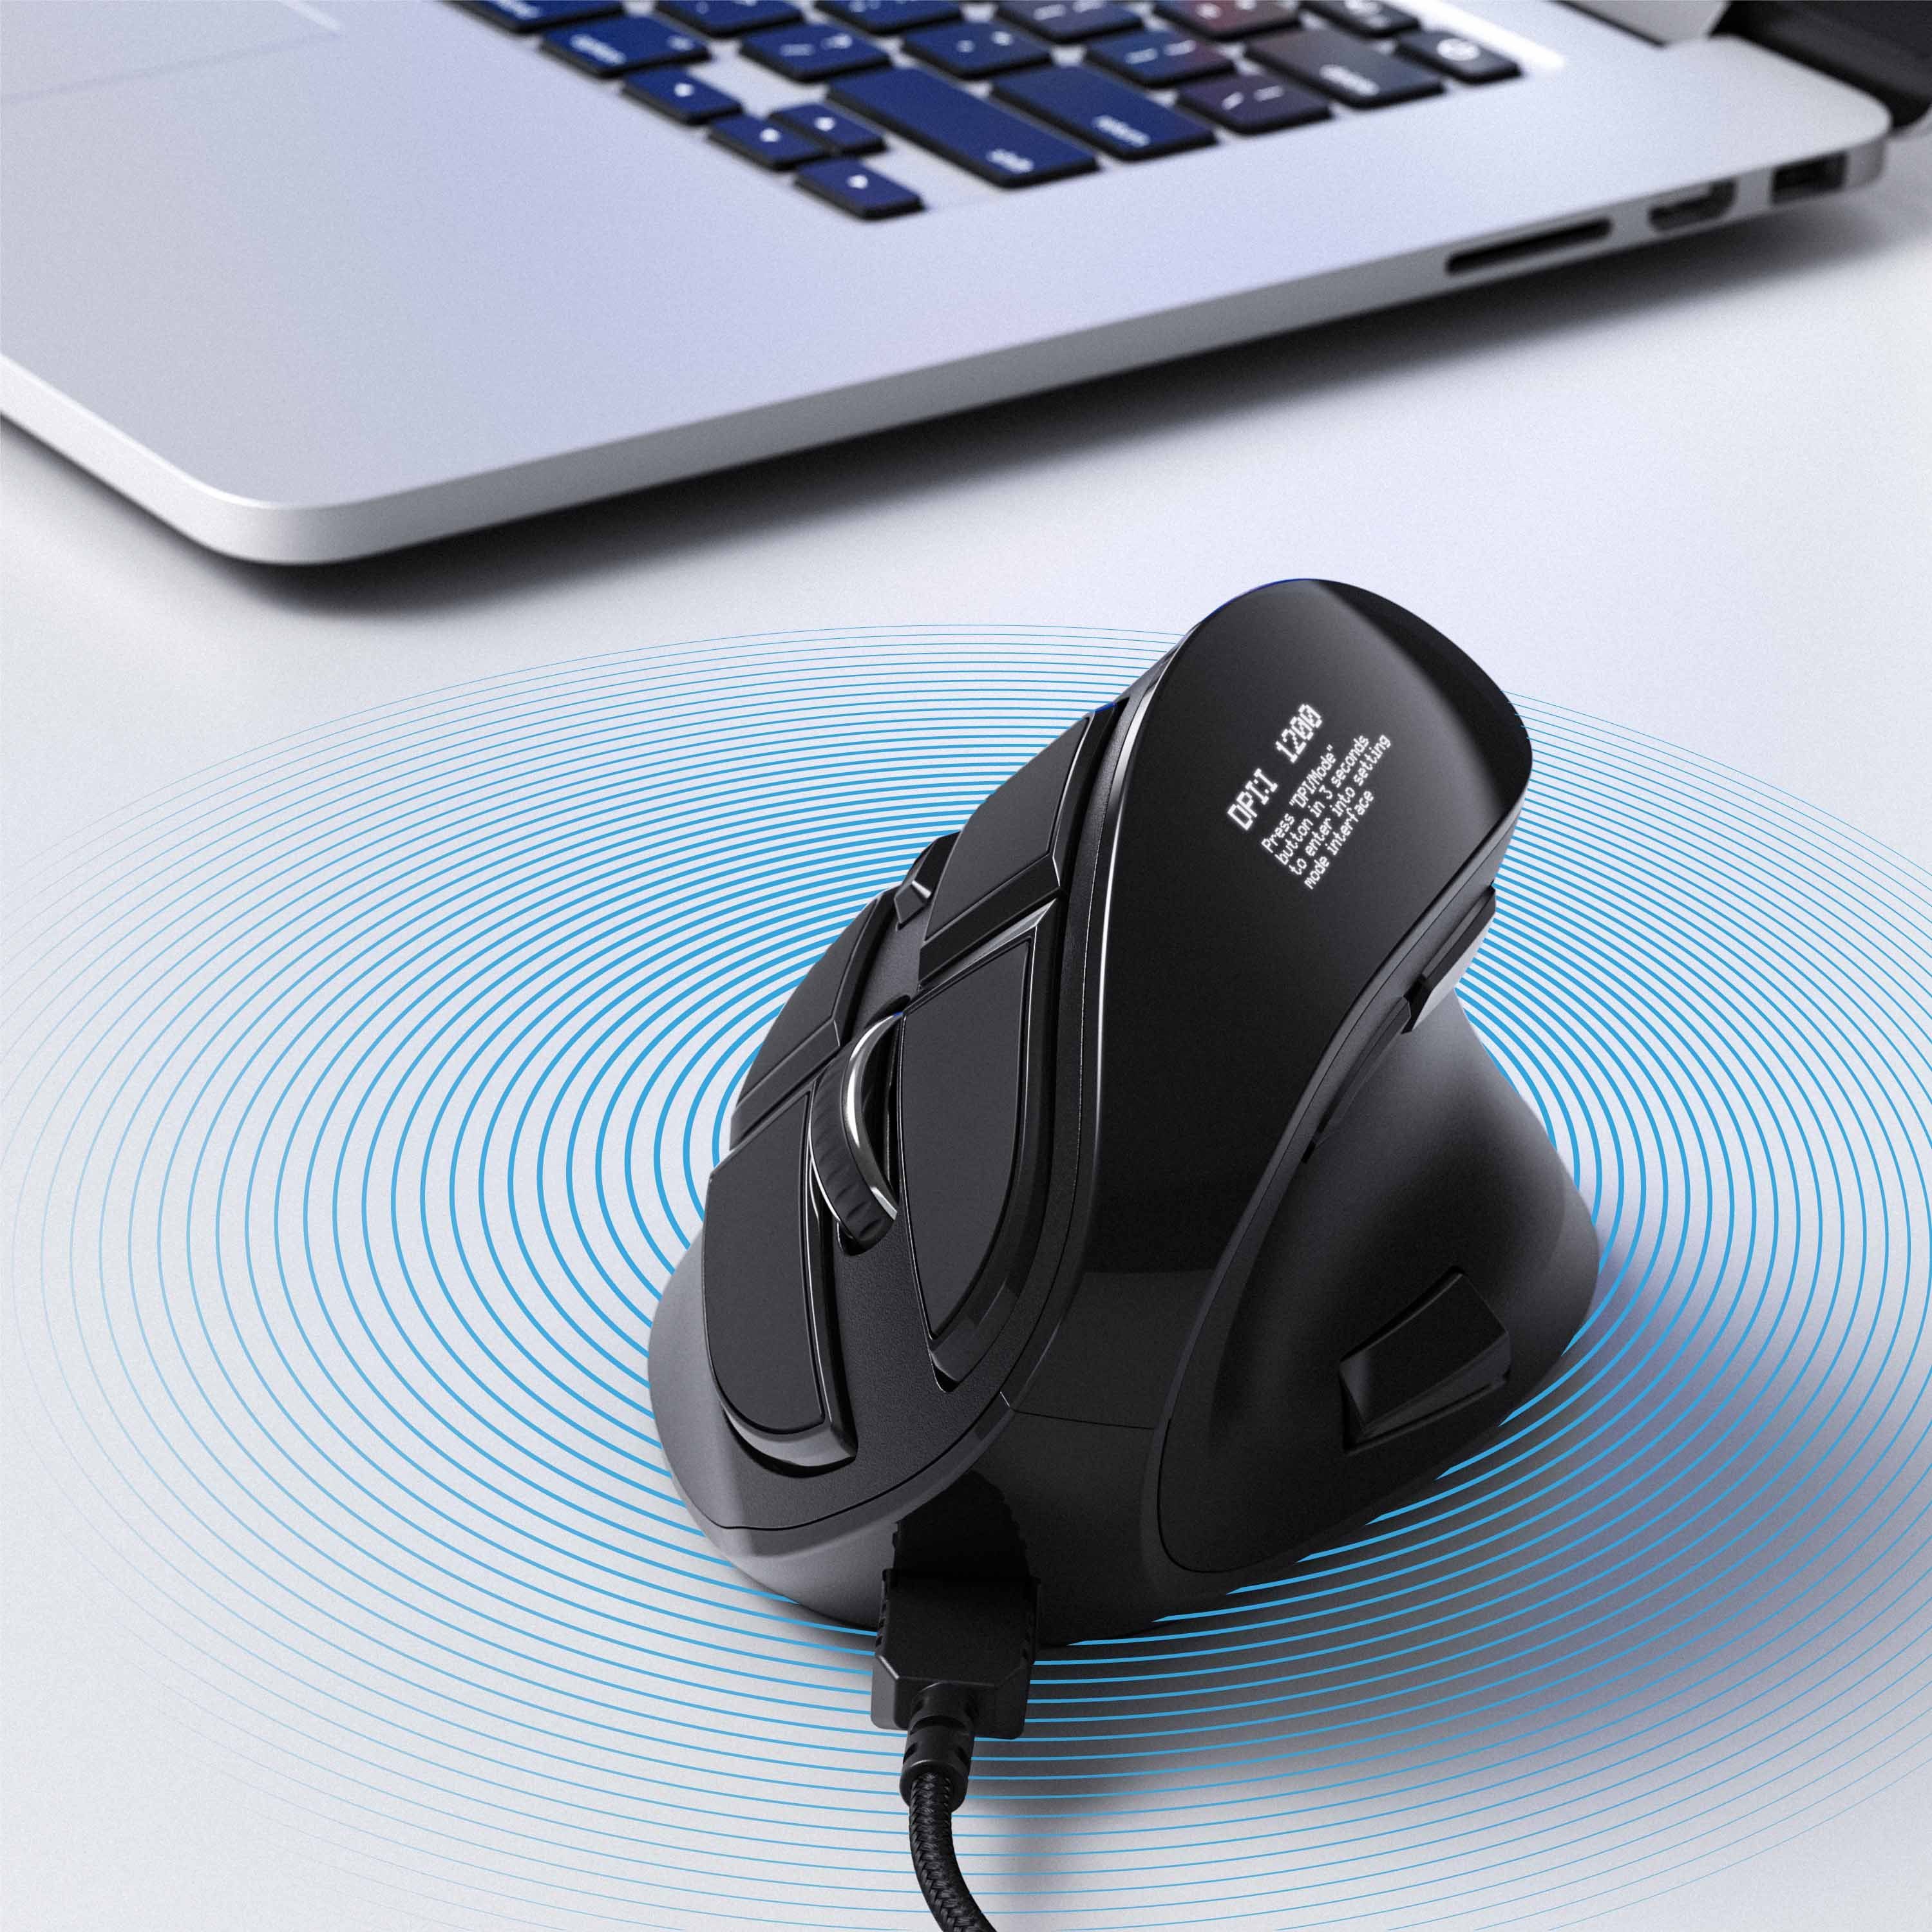 CSL ergonomische mit OLED-Display Maus Konfigurierbare kabelgebunden Tasten) dpi, (kabelgebunden, 125 Maus Vertikal